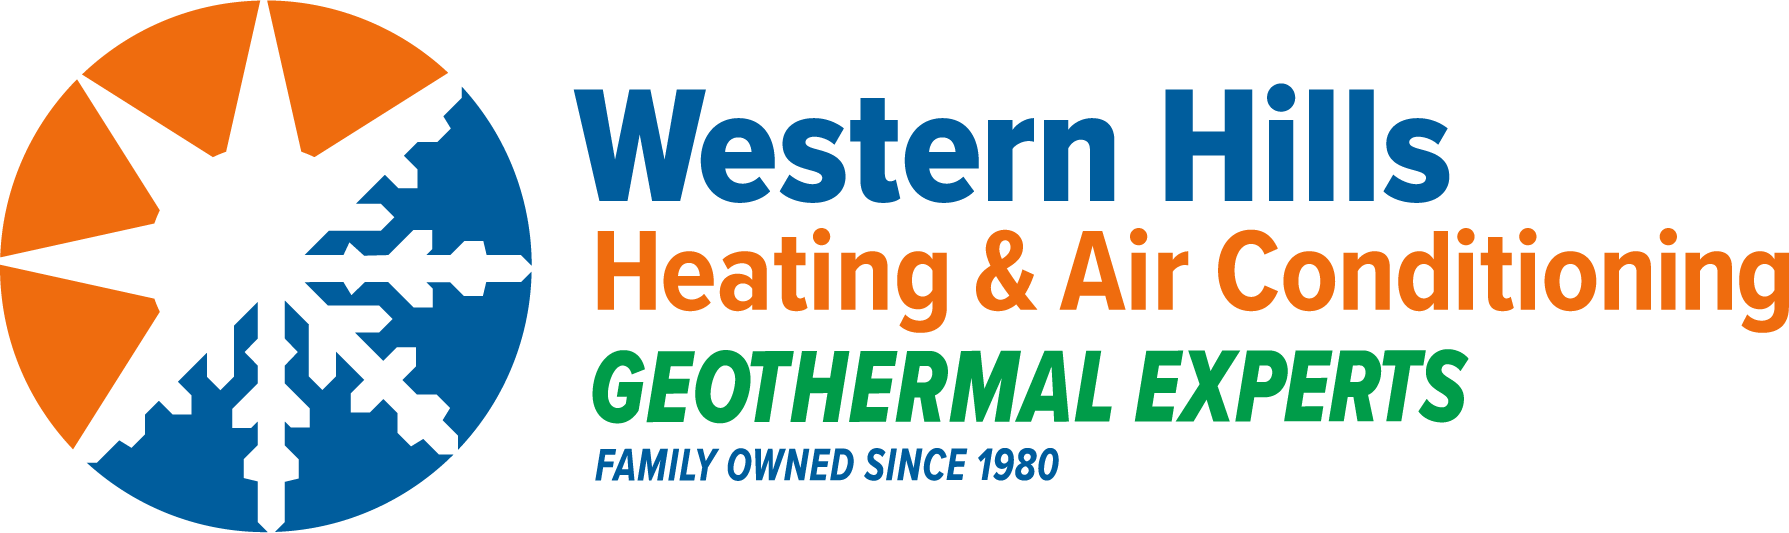 western hills logo